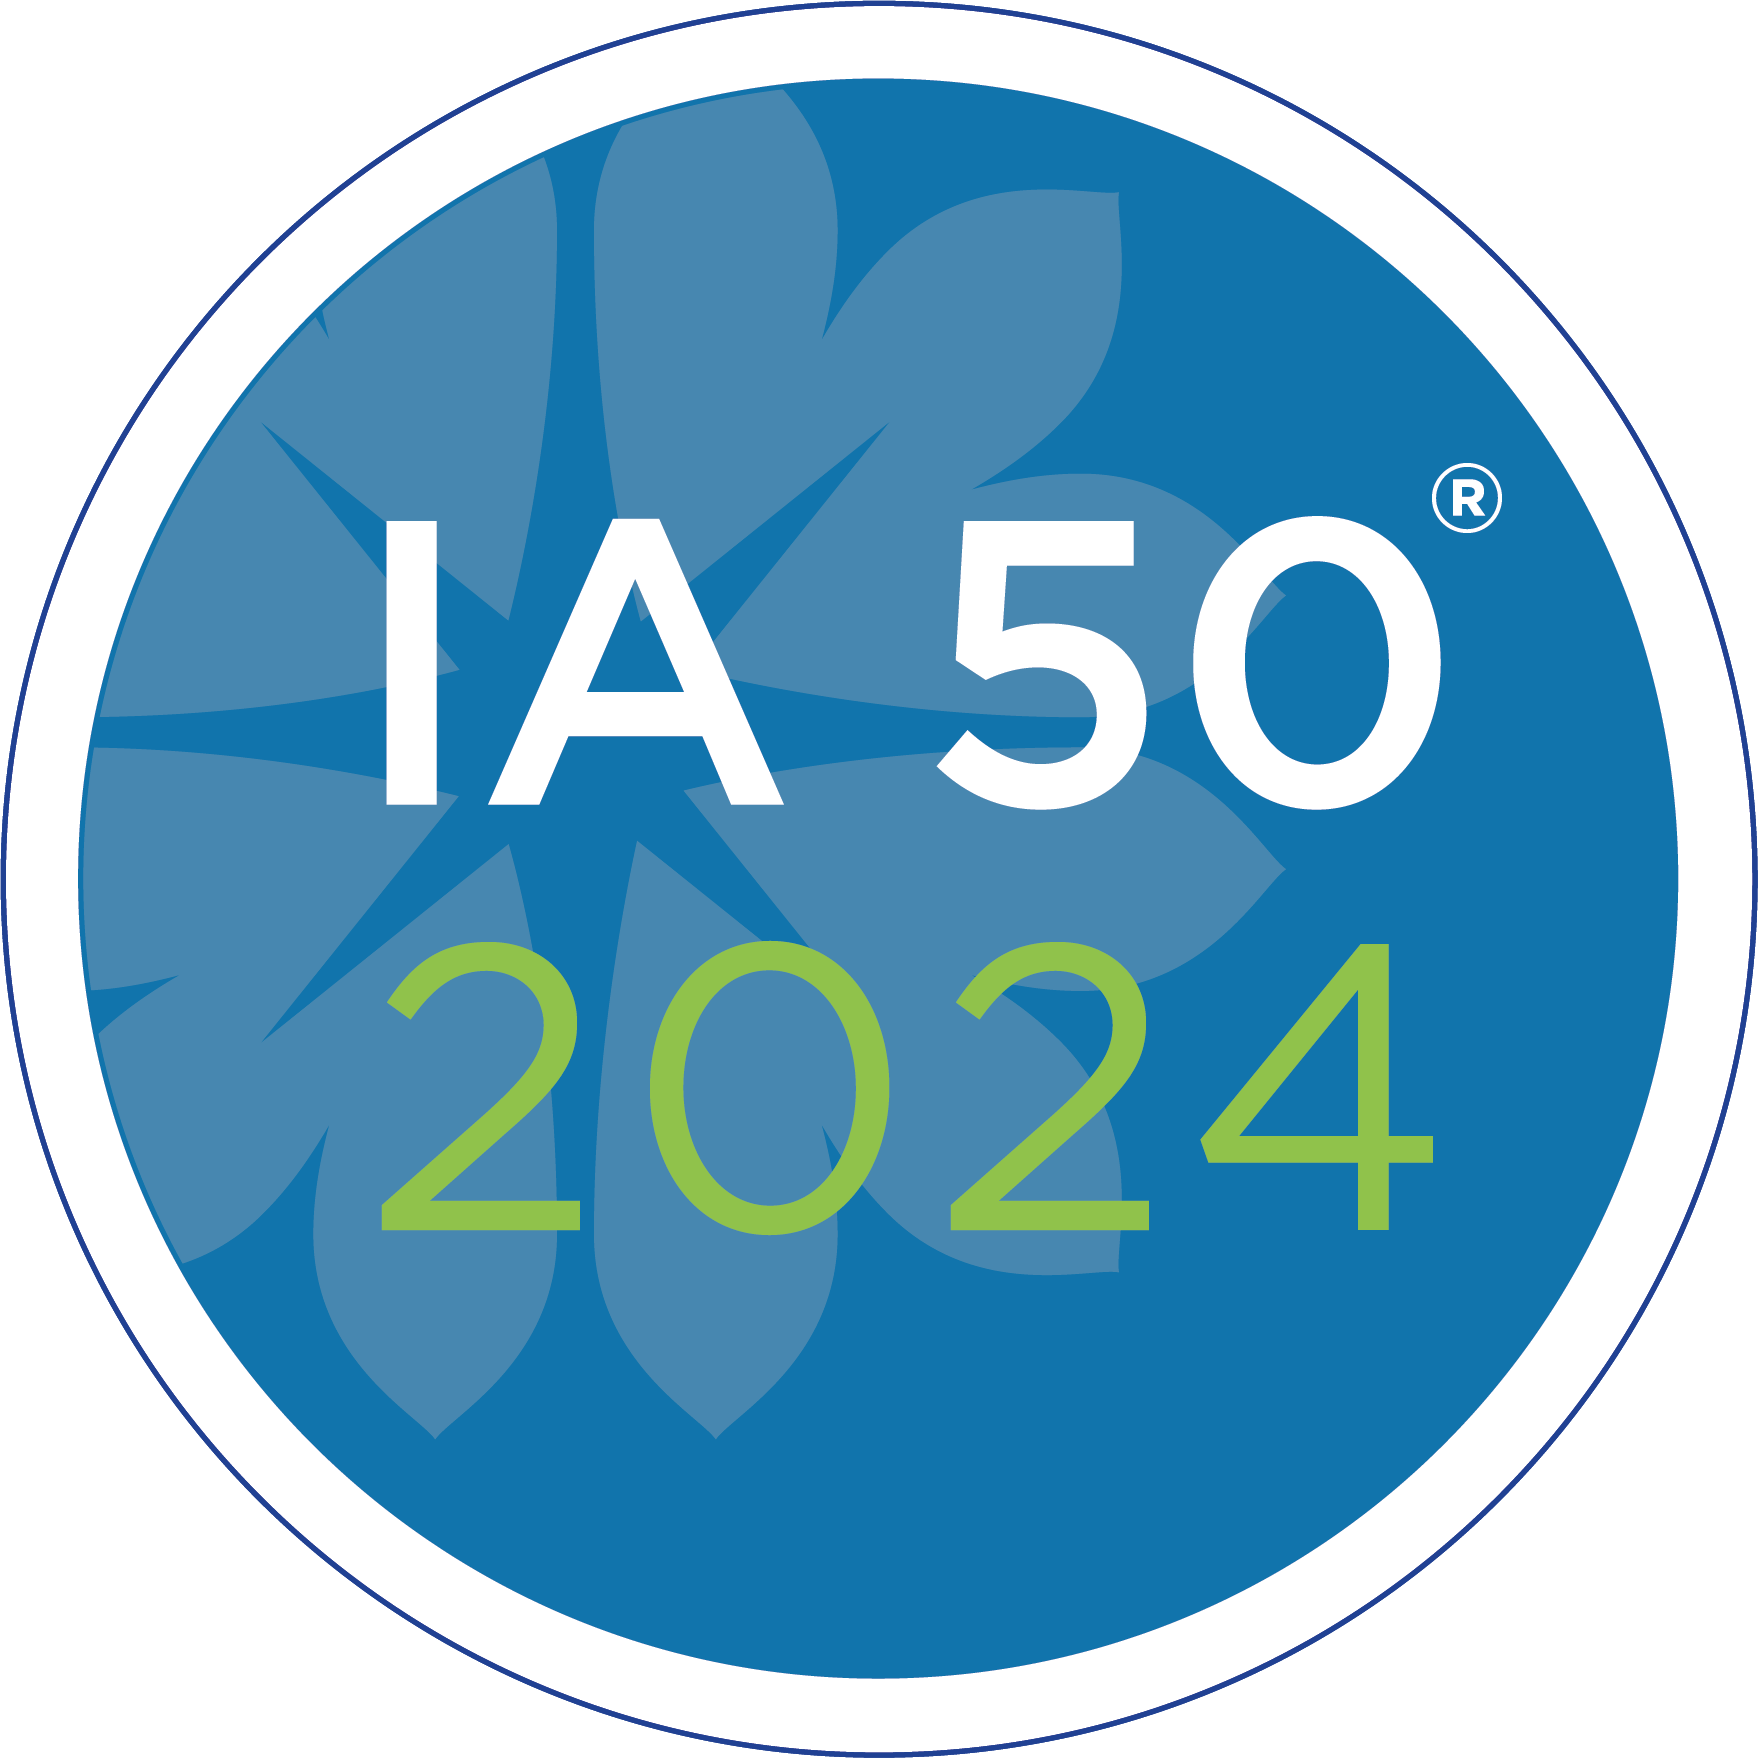 ia50 2024 logo